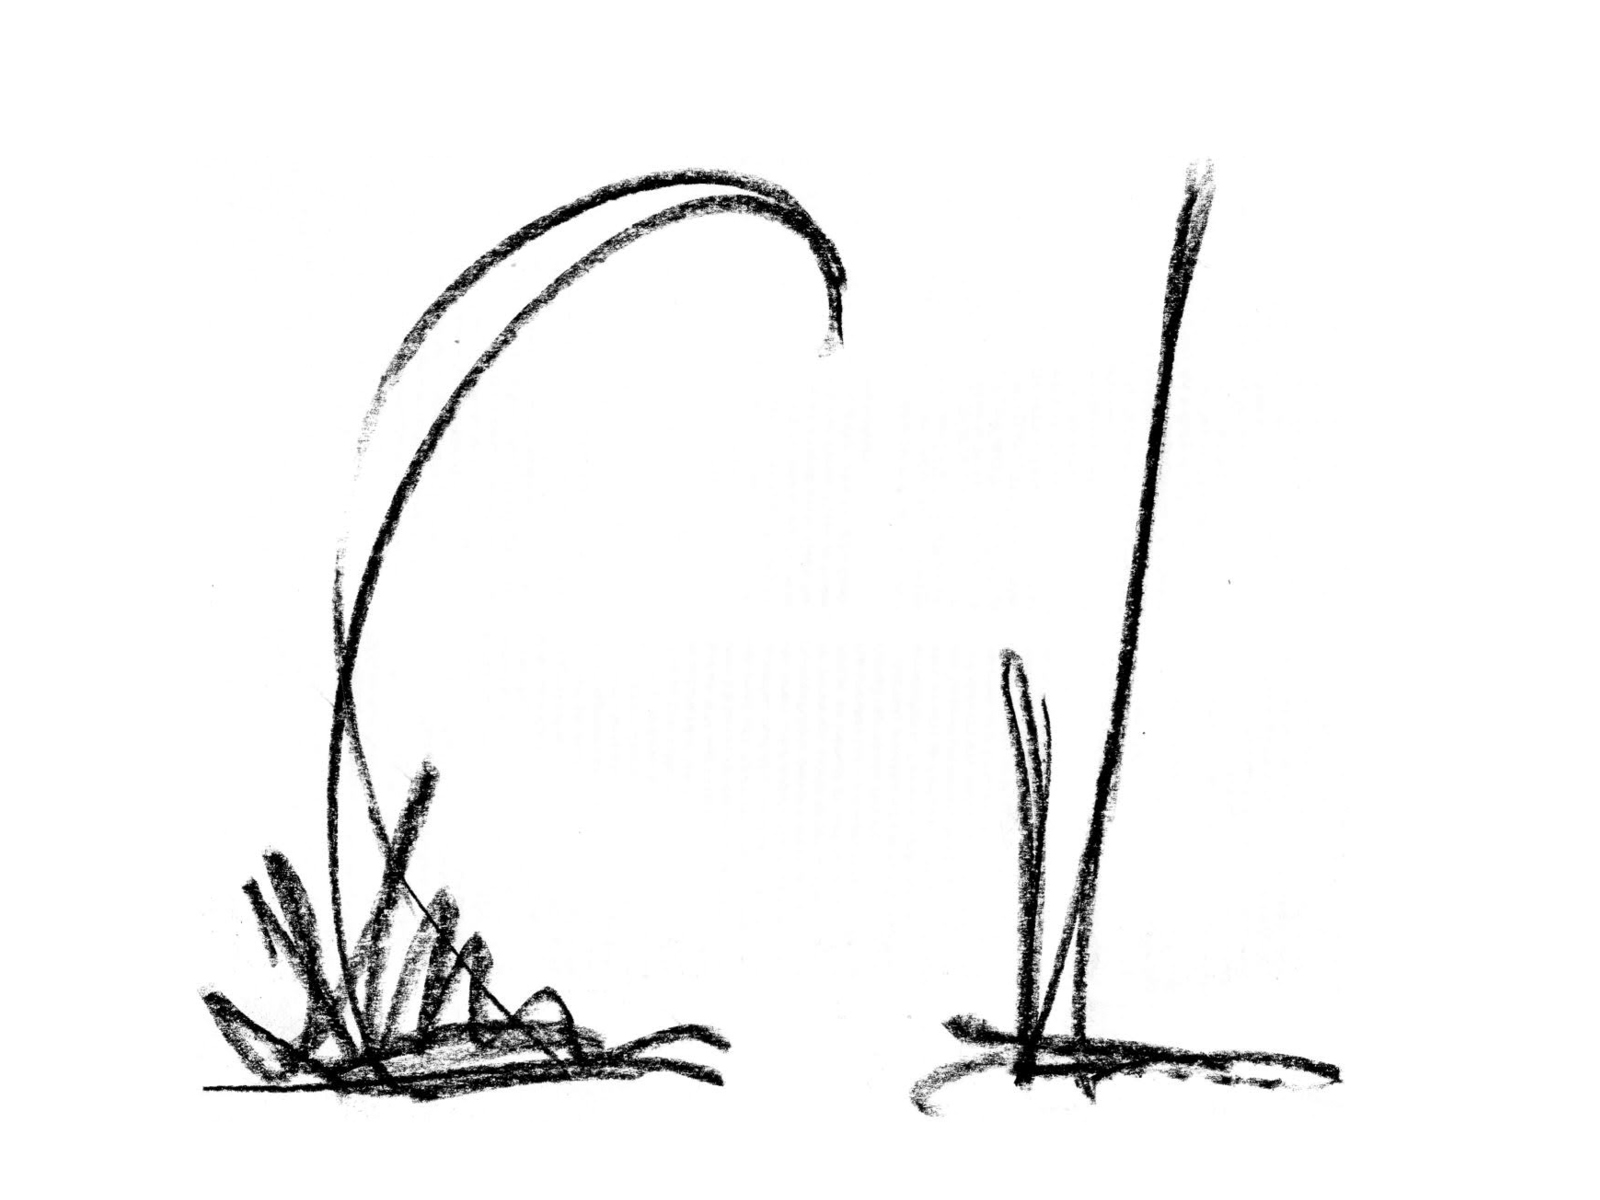 Zwei gezeichnete Striche, die wie Grashalme auf einer Wiese aussehen.